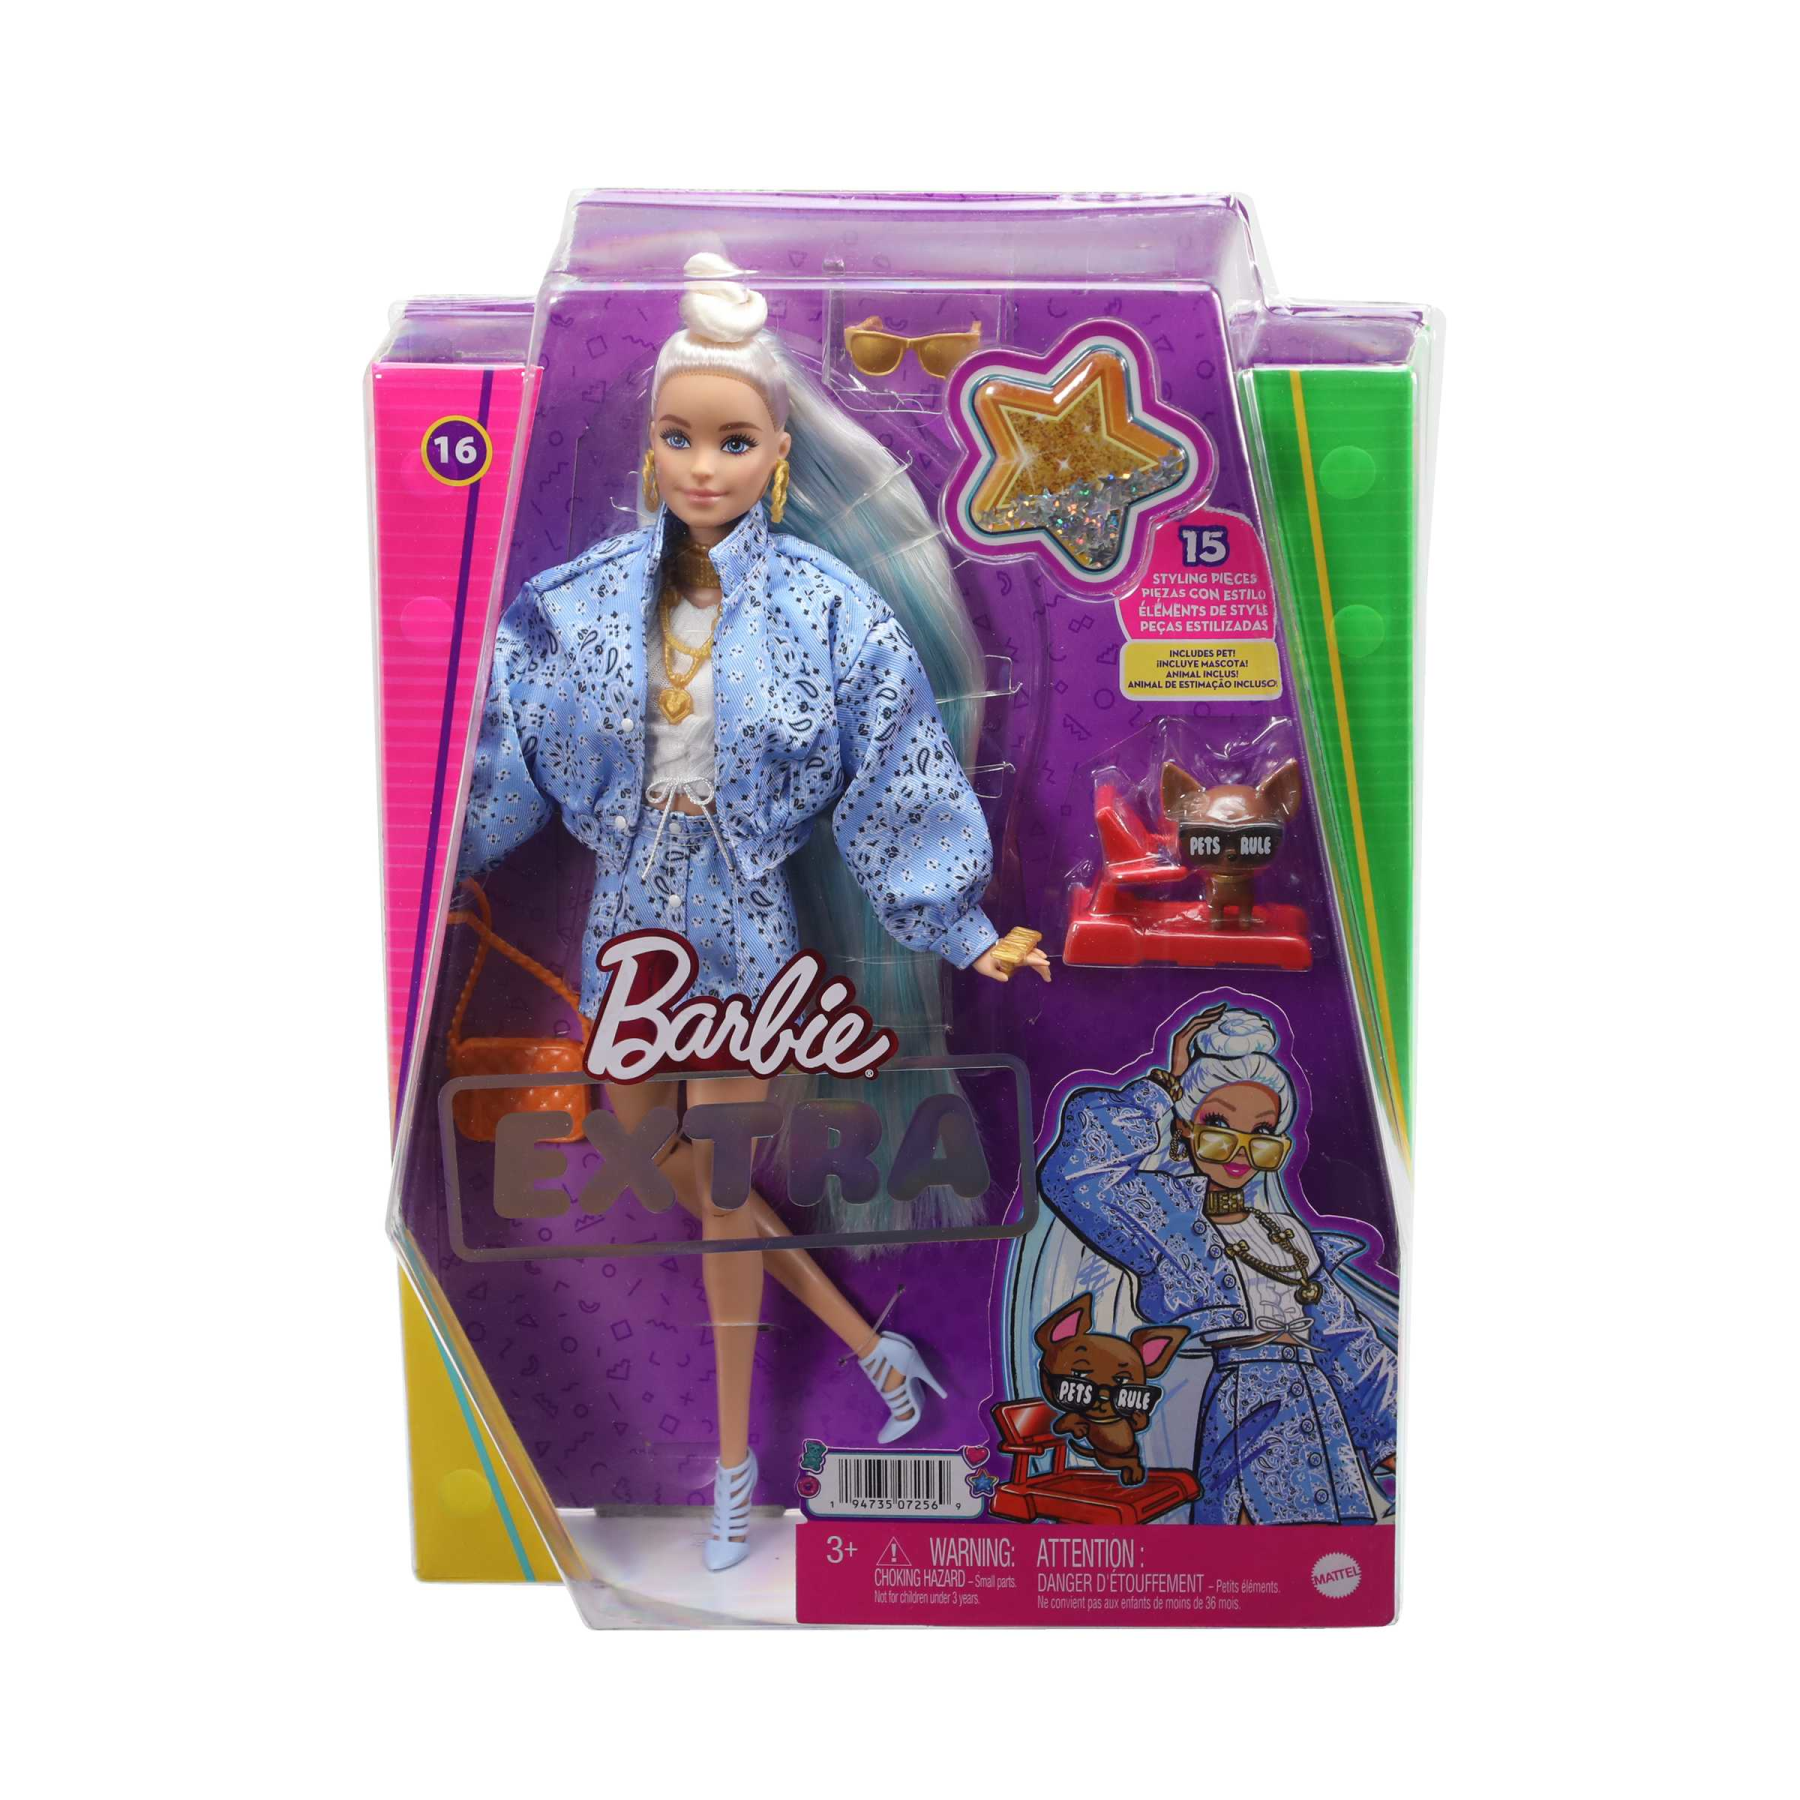 Barbie - barbie extra n.16 con cagnolino, gonna e giacca blu con motivo chachemire, capelli lunghissimi e accessori, giocattolo per bambini, 3+ anni, hhn08 - Barbie